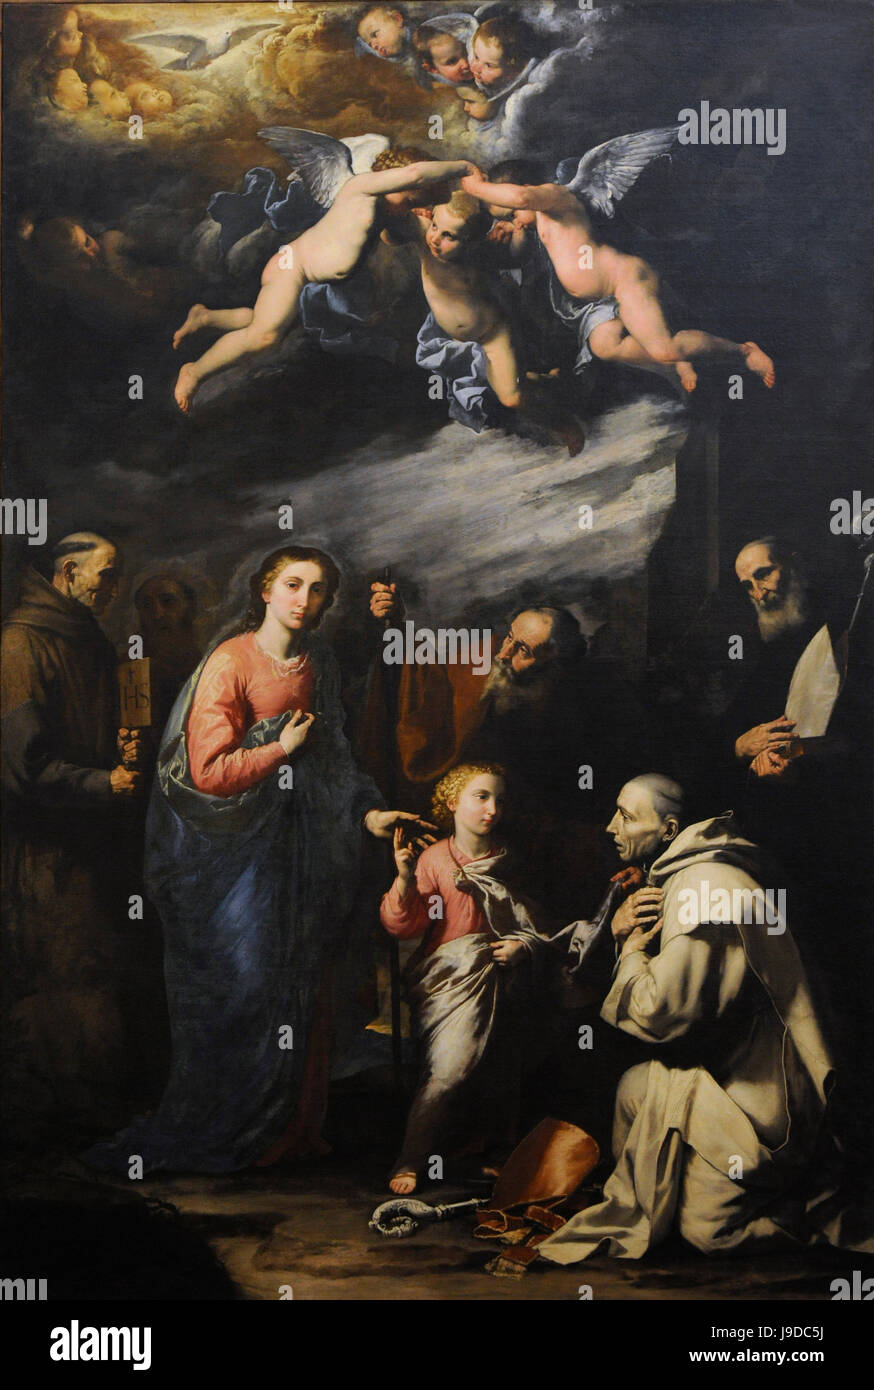 Jusepe de Ribera (1591-1652). Pintor barroco. Trinidad terrena con el eterno sacerdote. Museo Nacional de Capodimonte. Nápoles. Italia. Foto de stock